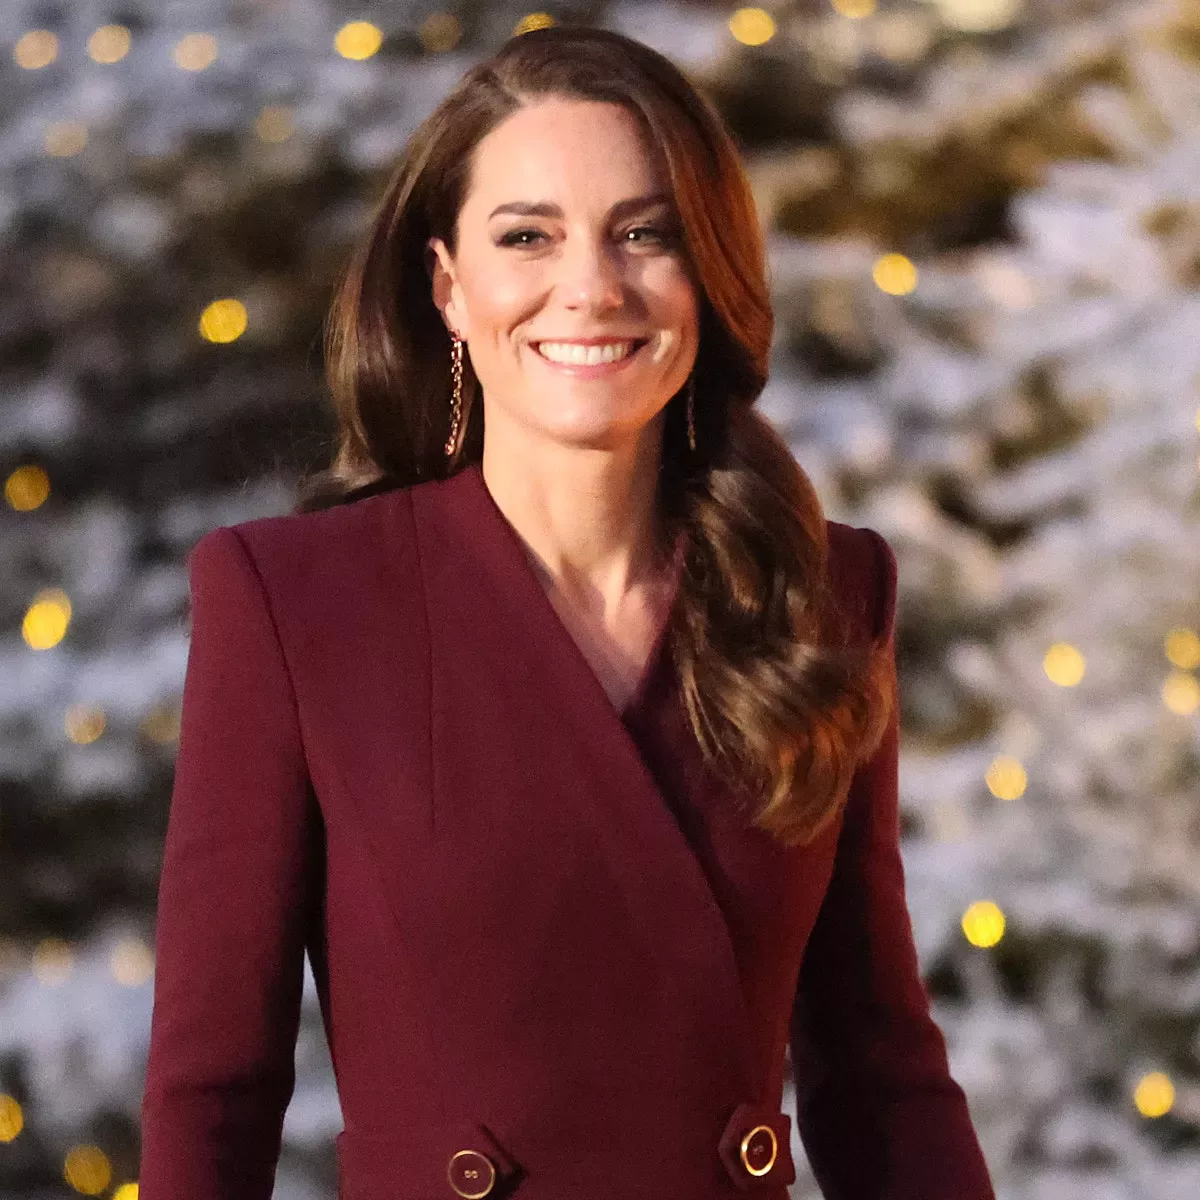 Kate Middleton reflexiona sobre el "increíble" legado de la reina Isabel II en un vídeo navideño